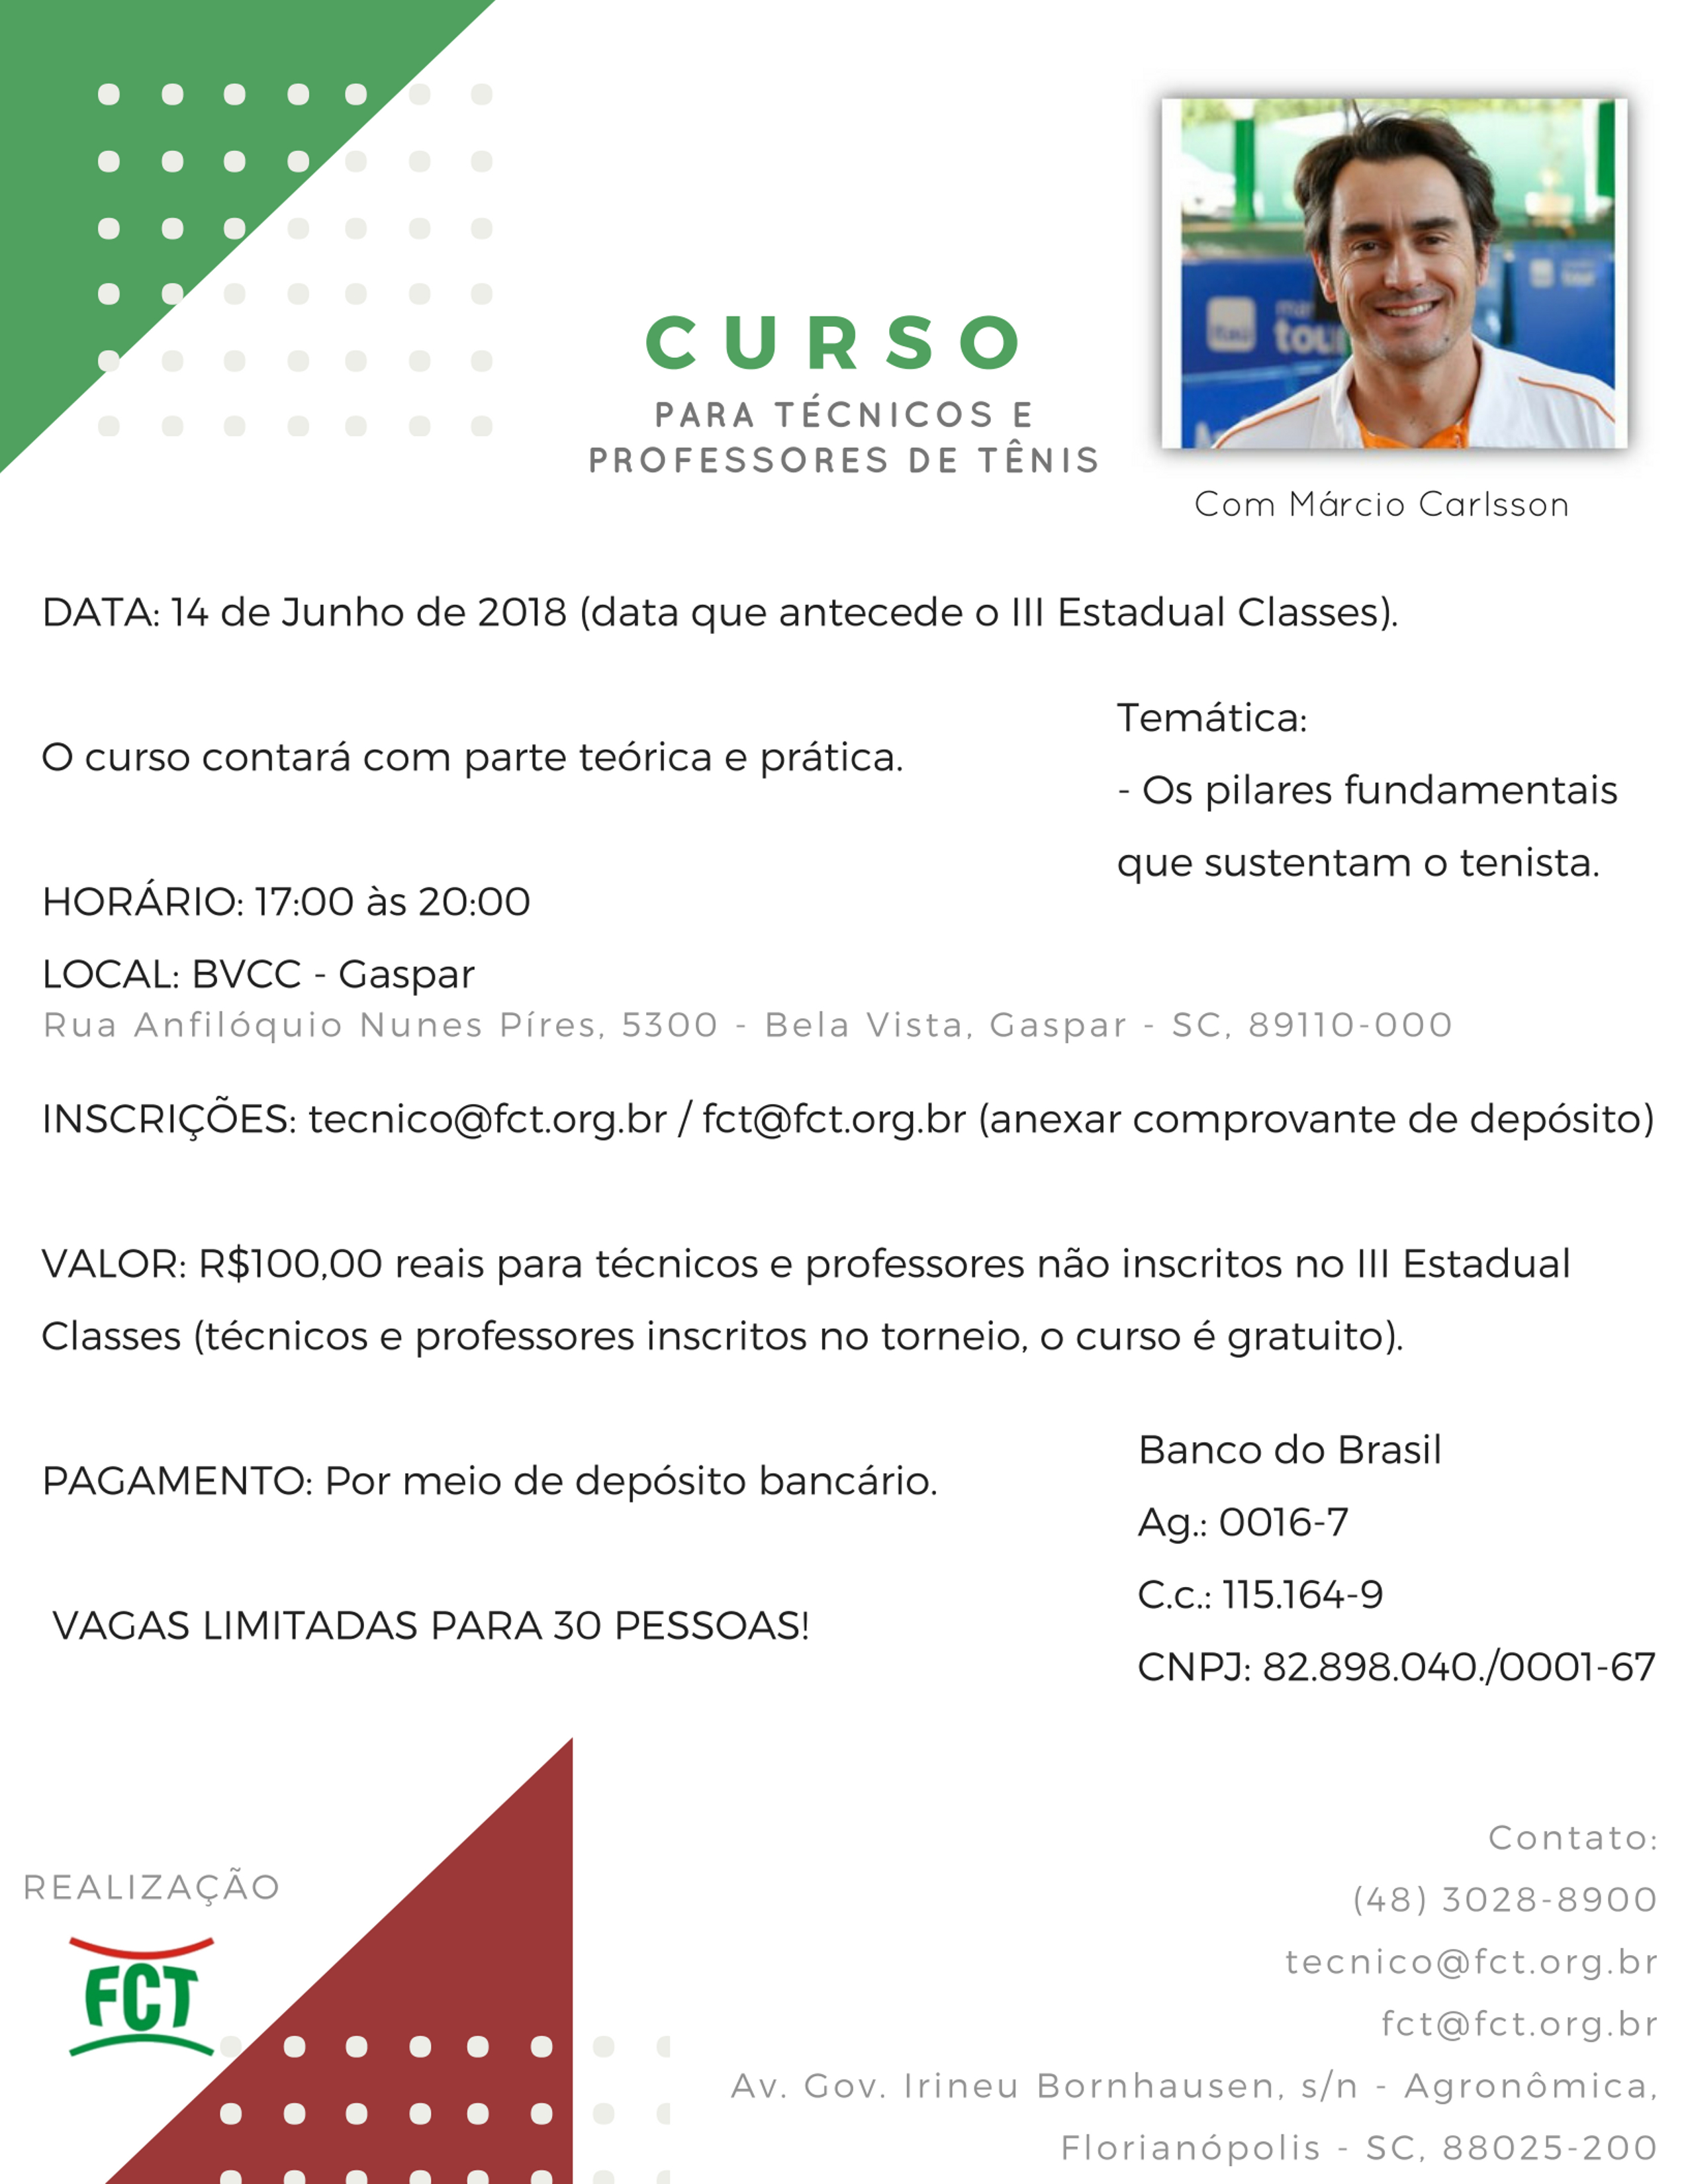 CURSO PARA TÉCNICOS E PROFESSORES COM MÁRCIO CARLSSON